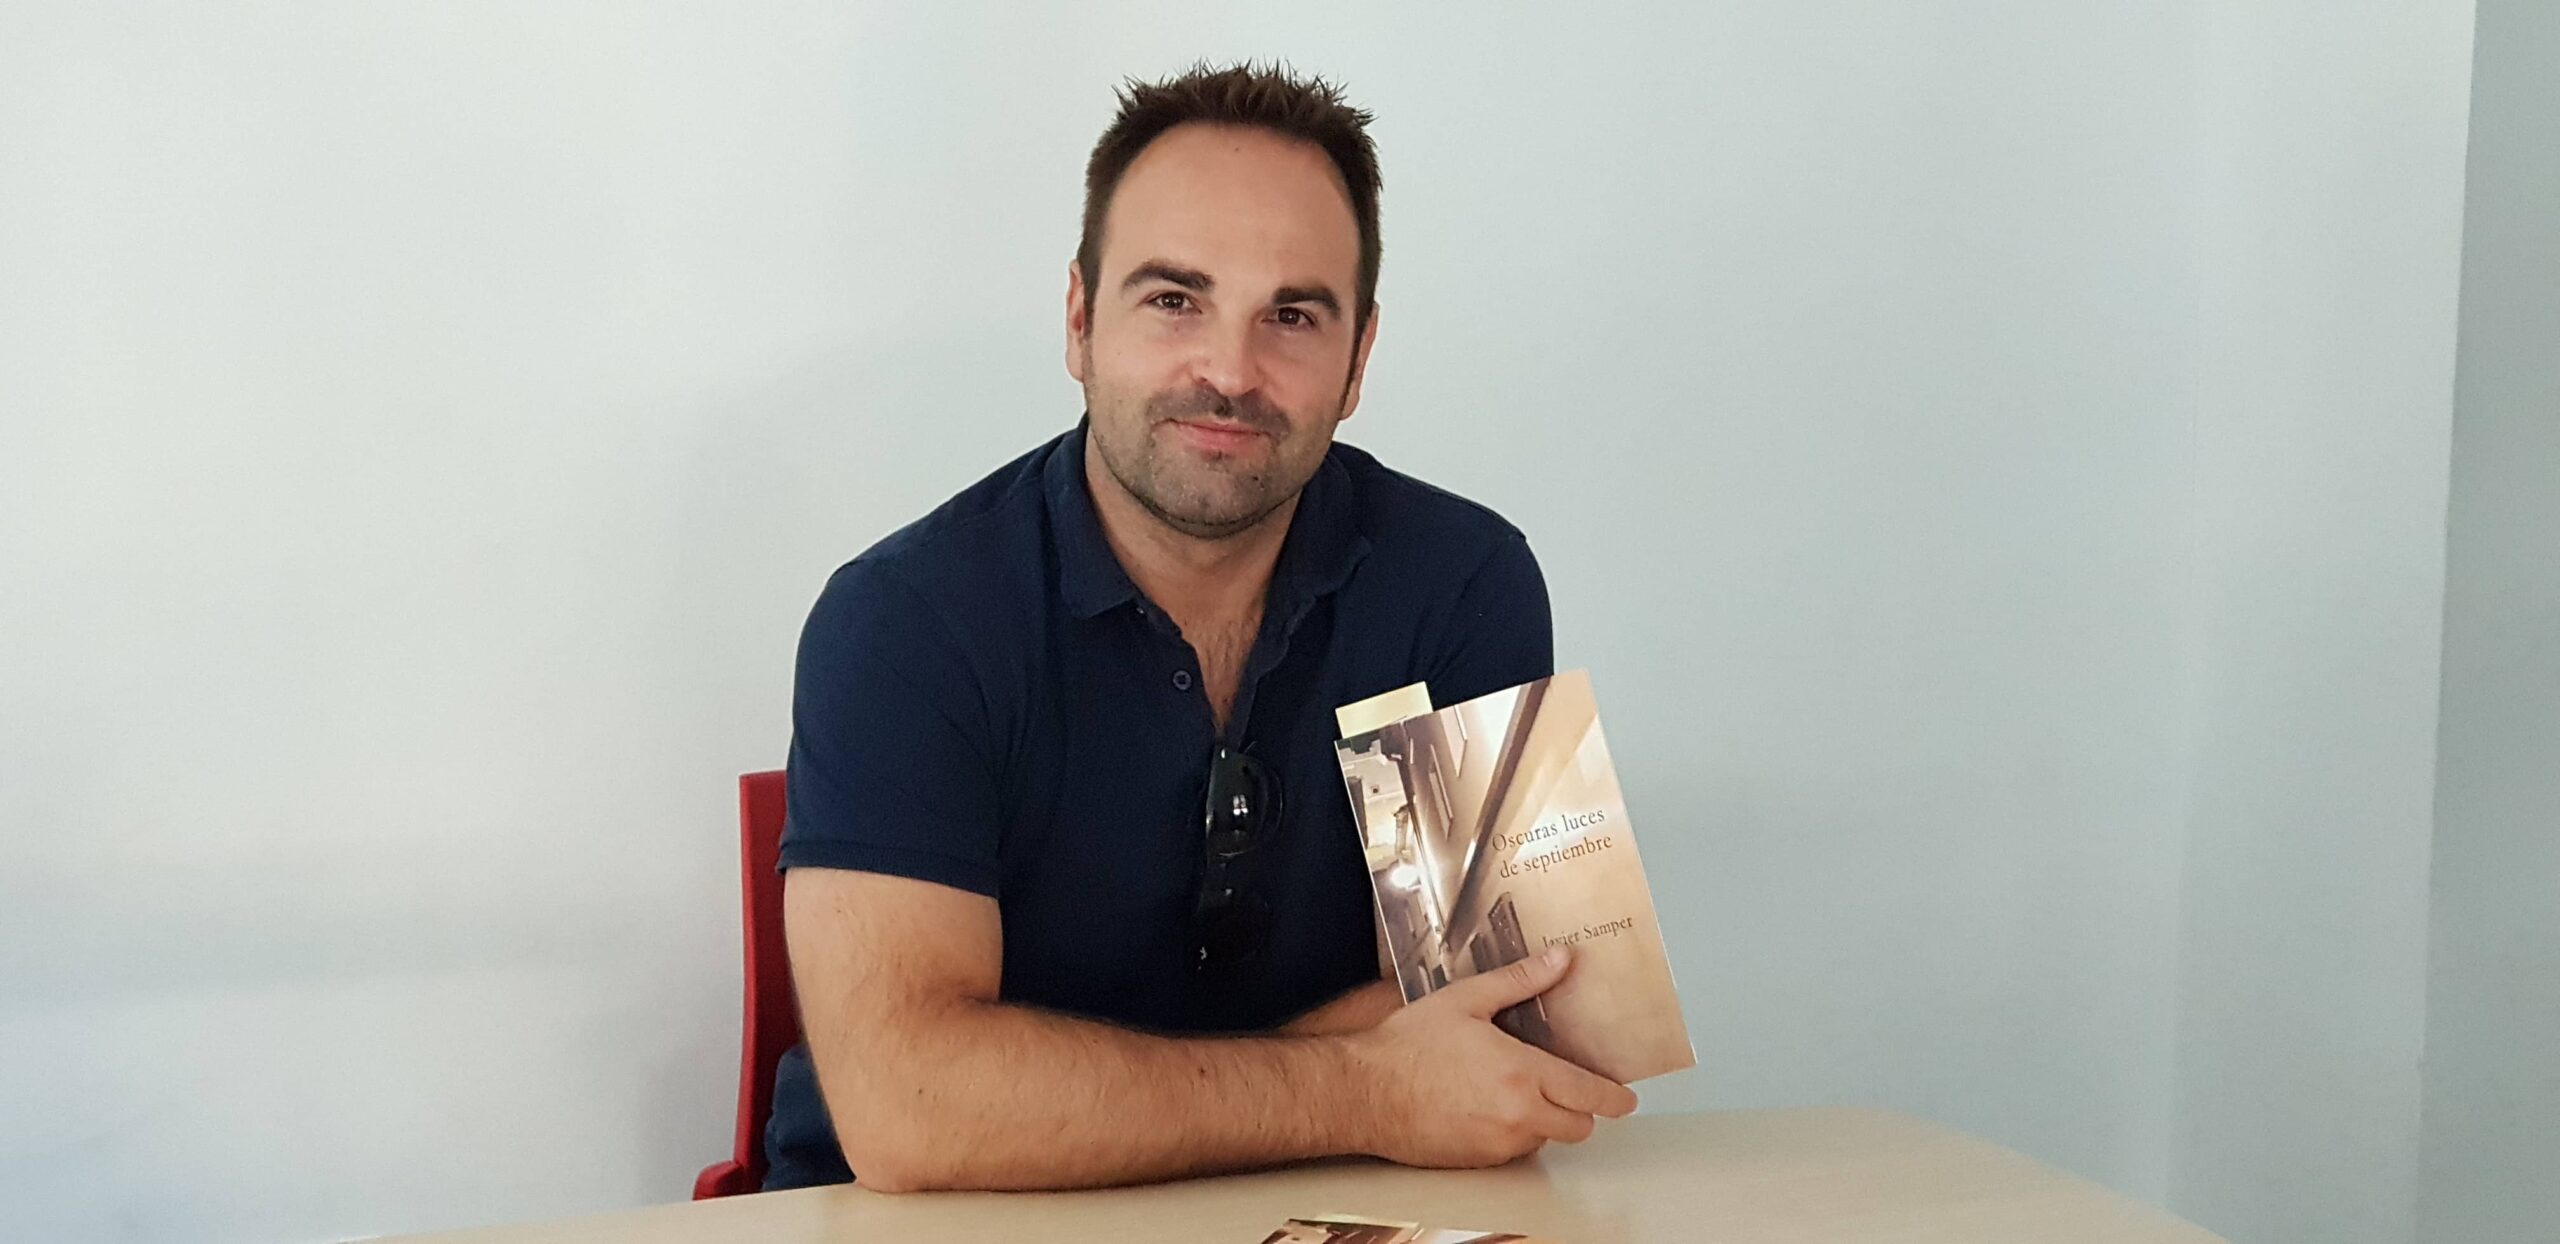 «Oscuras luces de septiembre», la primera novela de Javier Samper  ambientada  en Villena